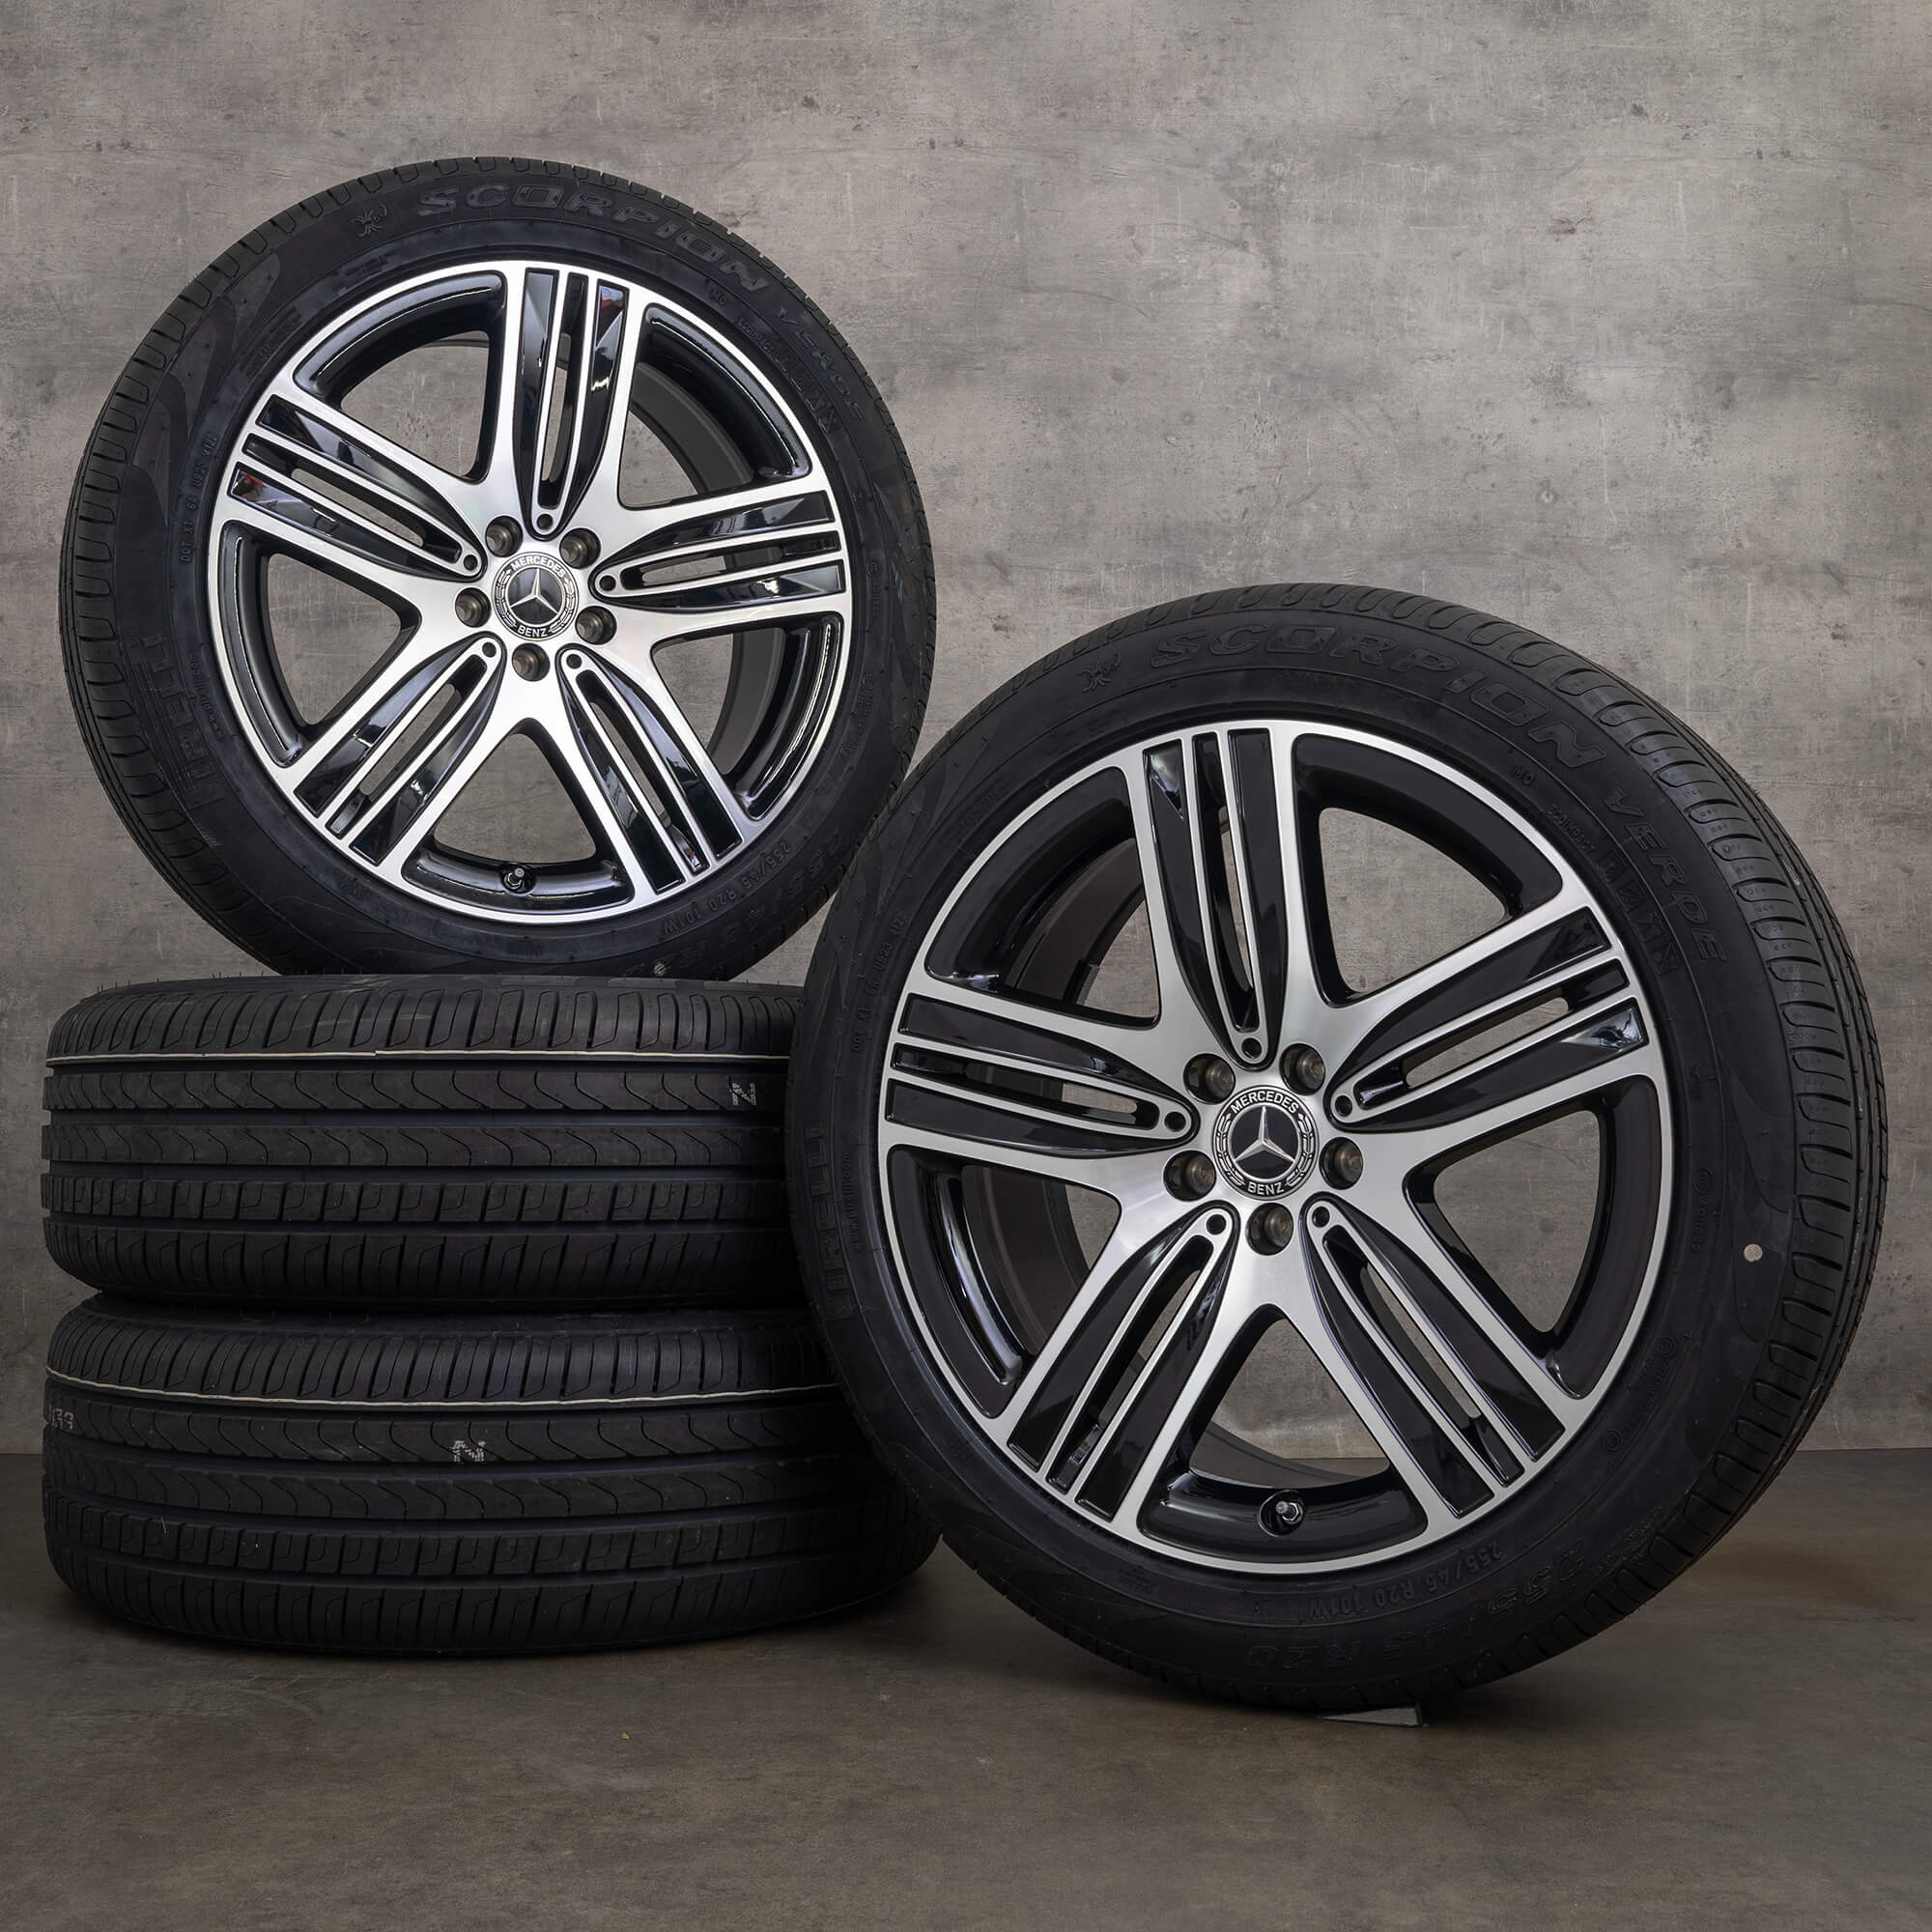 Jantes originais Mercedes EQC N293 de 20 polegadas para pneus verão A2934010400 A2934010600 preto brilhante